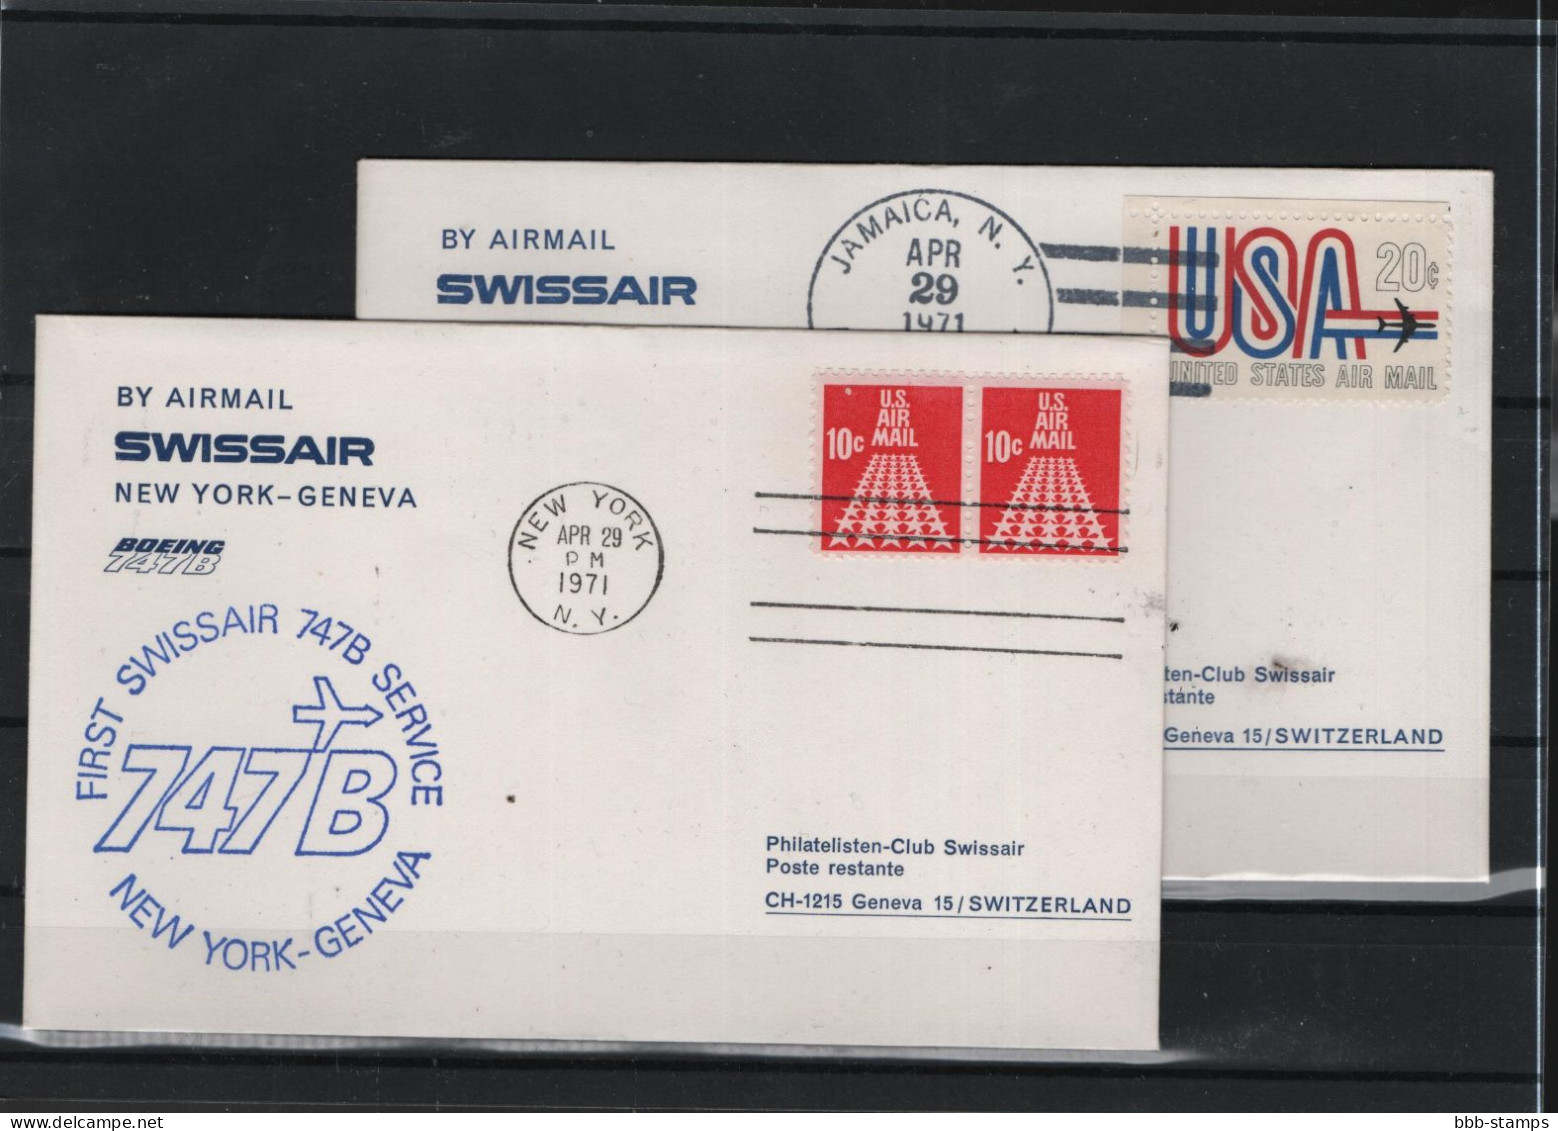 Schweiz Luftpost FFC Swissair 29.4.1971 New York - Genf - Premiers Vols